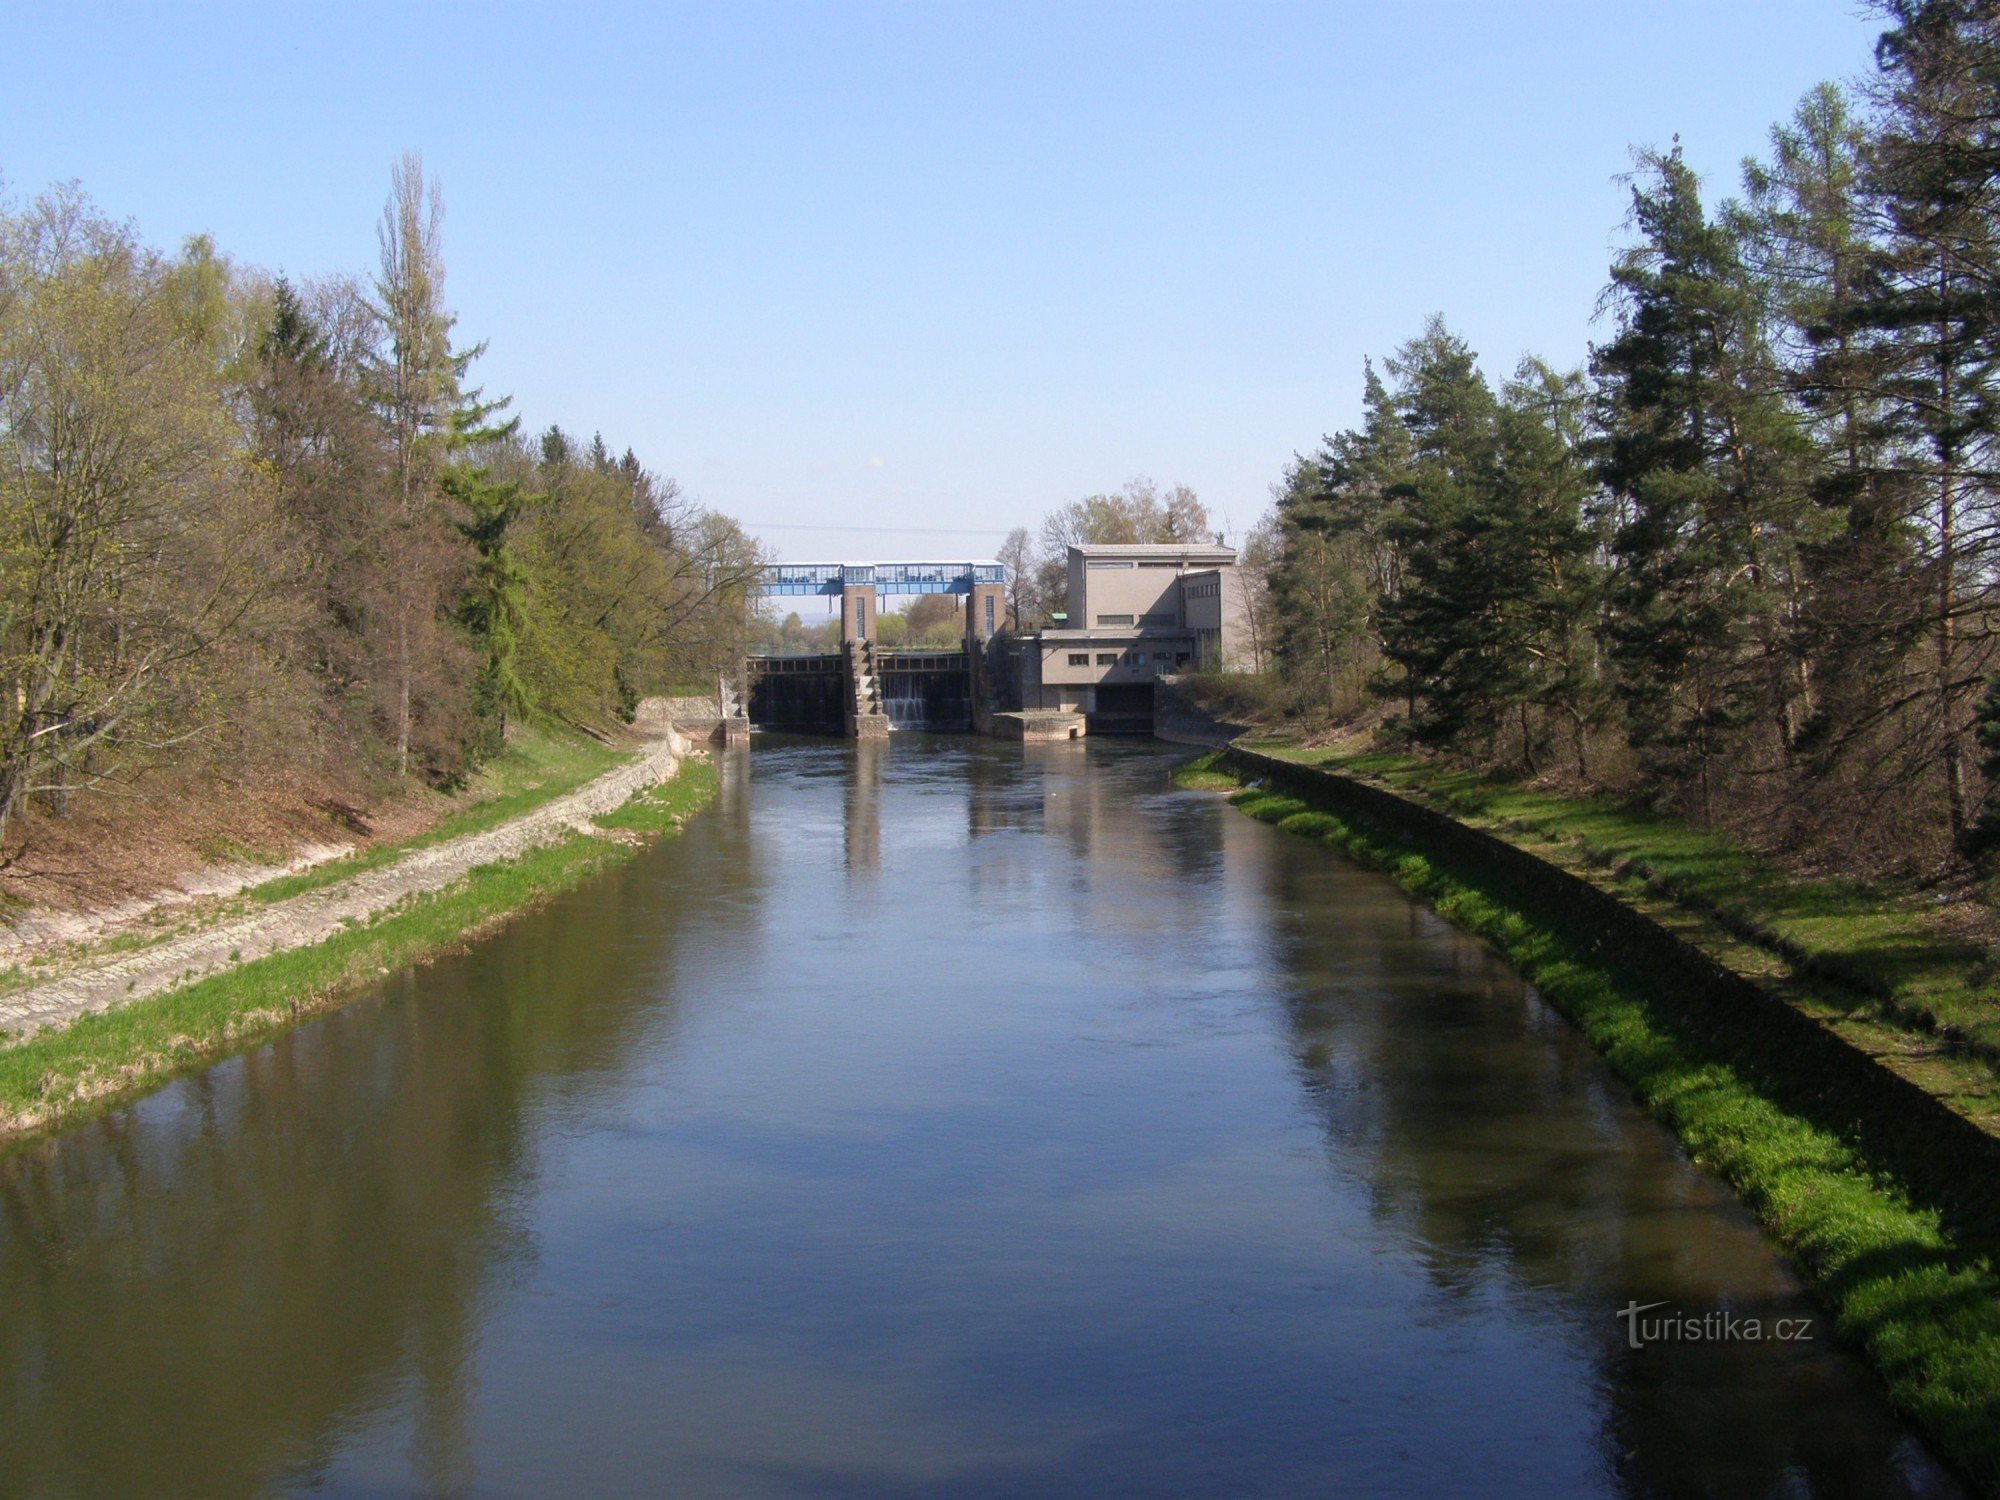 Smiřický diga - centrale idroelettrica sull'Elba